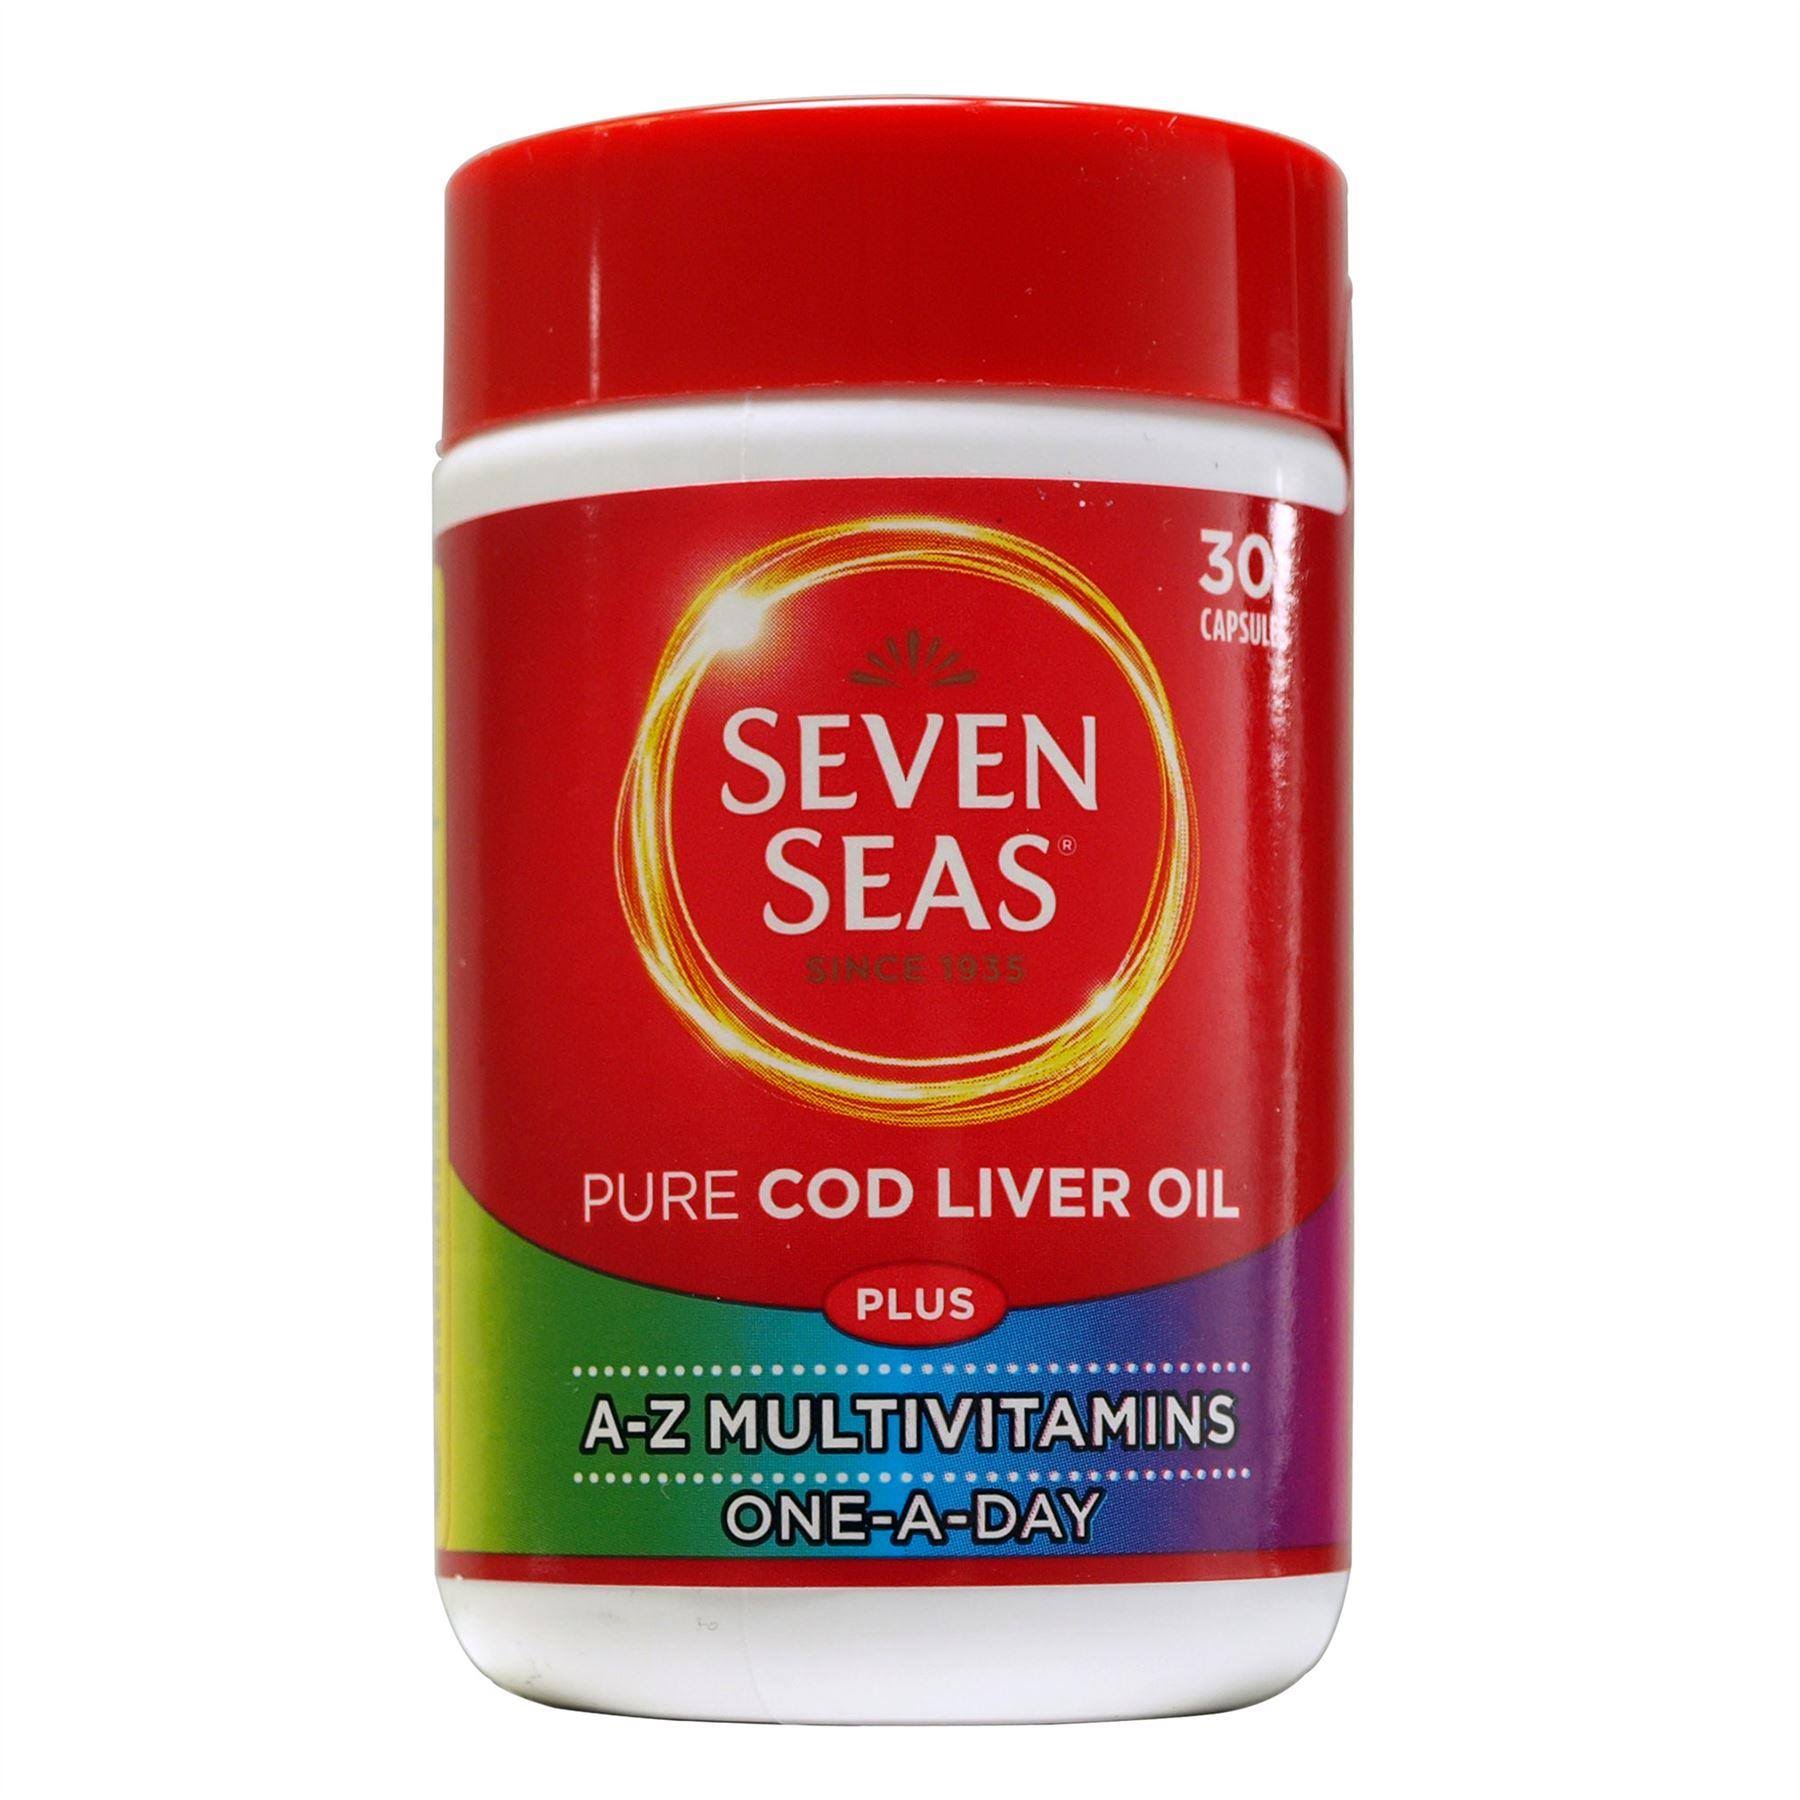 Seven Seas Cod Liver Oil Omega 3 Fish Oil Plus Multivitamins - 30 Capsules